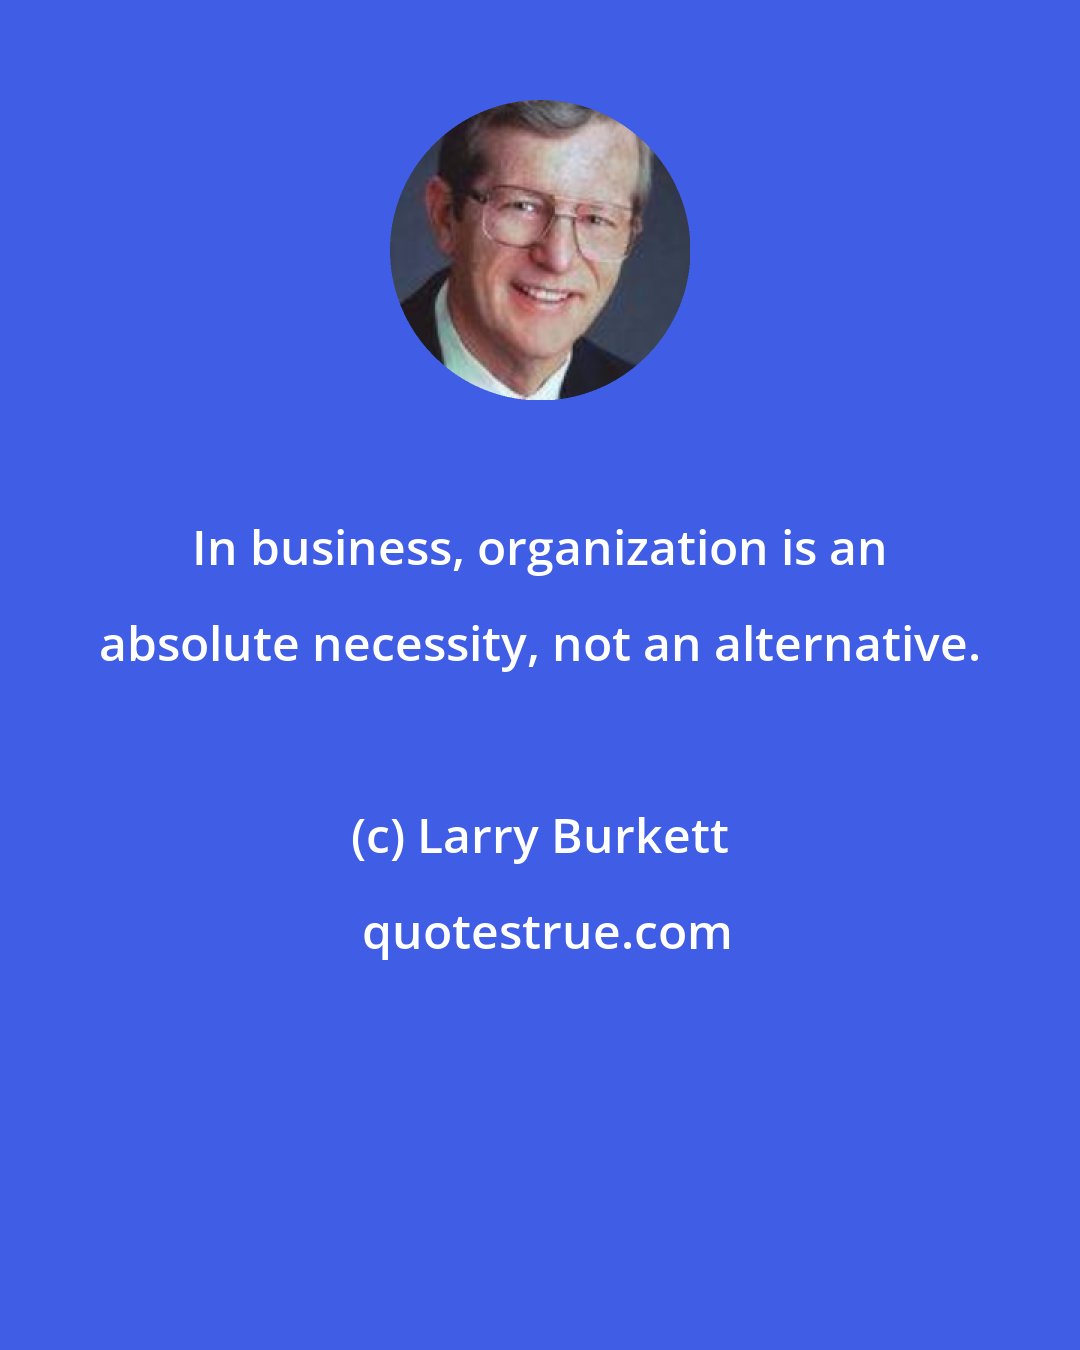 Larry Burkett: In business, organization is an absolute necessity, not an alternative.